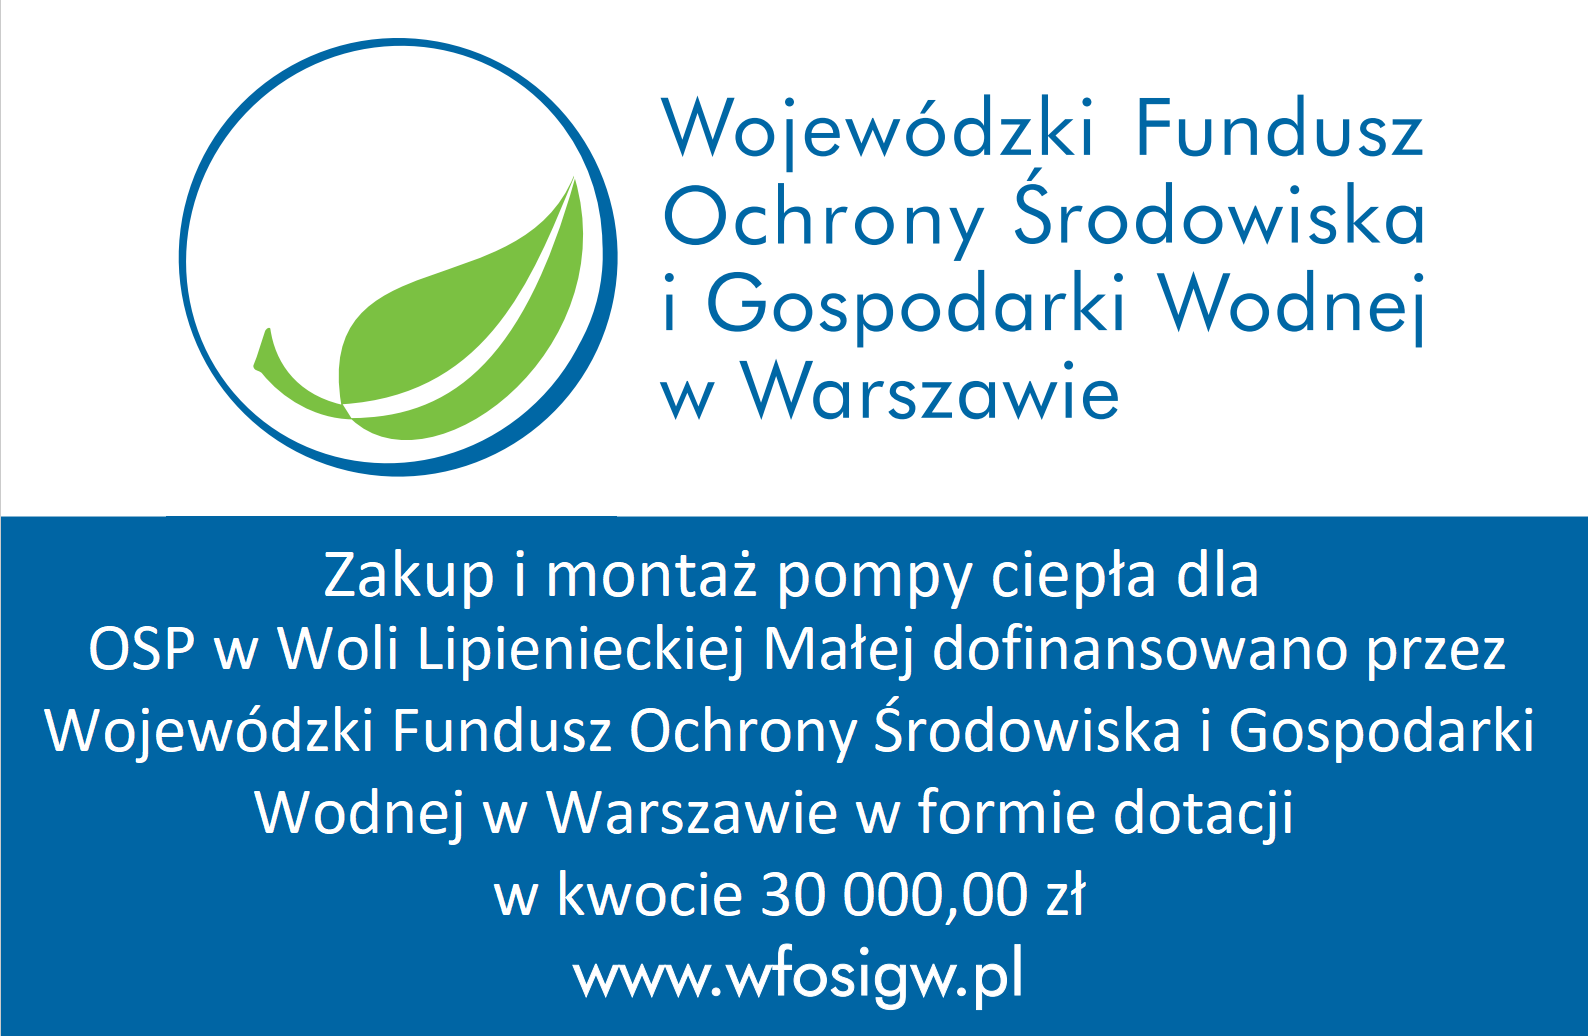 Zakup i montaż pompy ciepła dla OSP w Woli Lipienieckiej Małej dofinansowano przez Wojewódzki Fundusz Ochrony Środowiska i Gospodarki Wodnej w Warszawie, w formie dotacji, w kwocie 30 000,00 zł www.wfosigw.pl